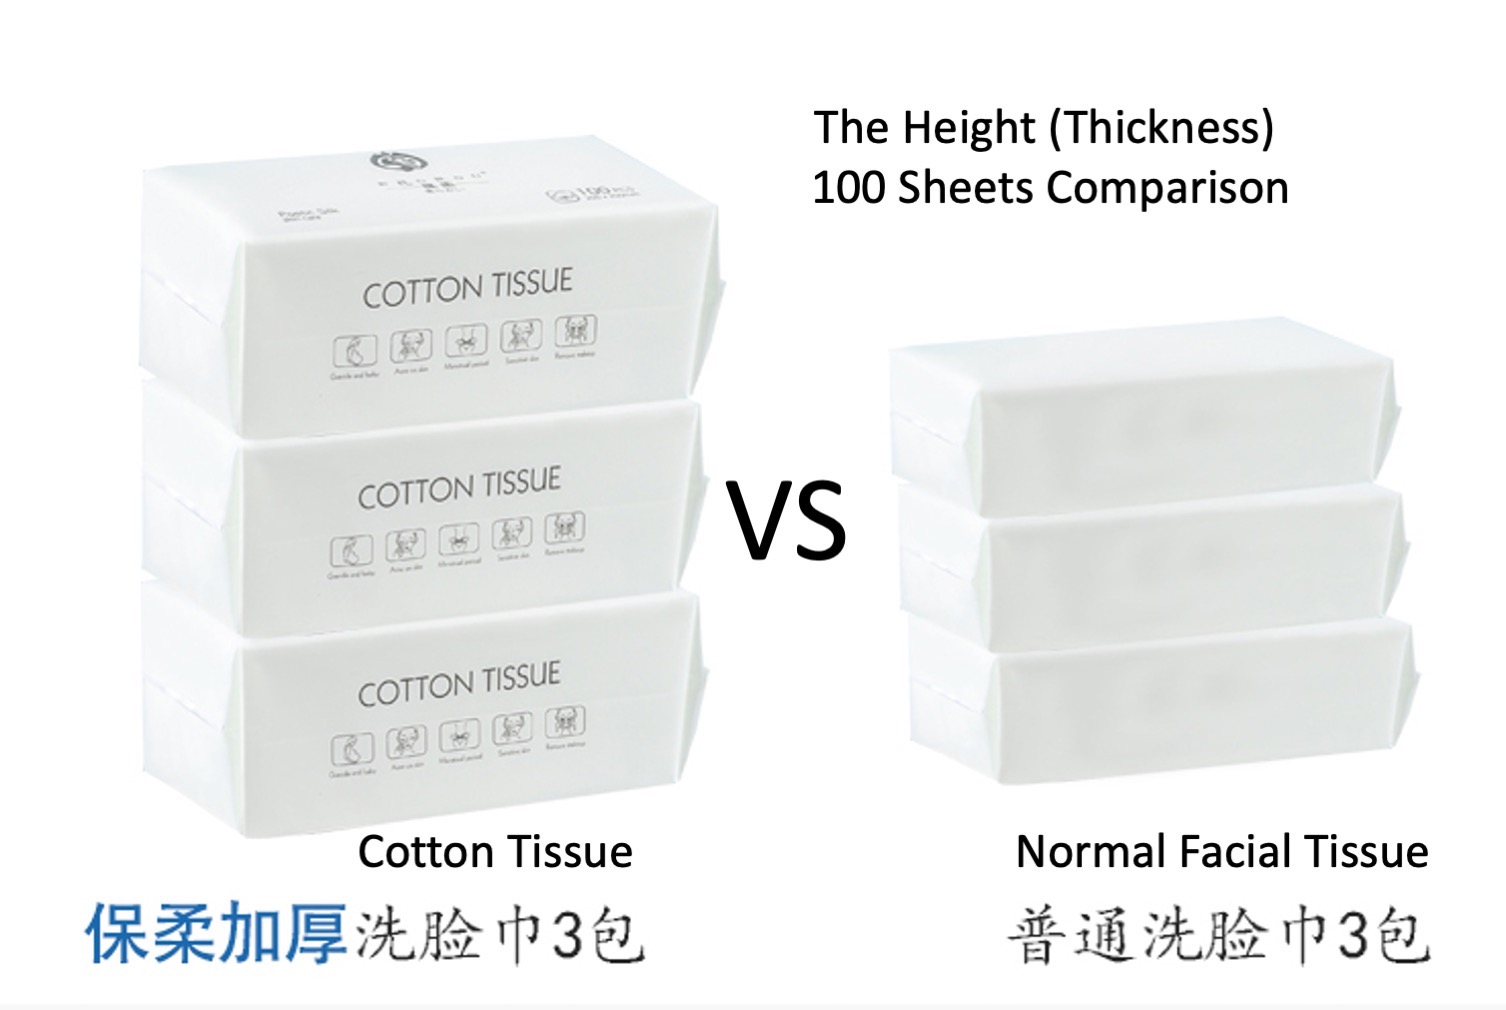 Cotton Tissue